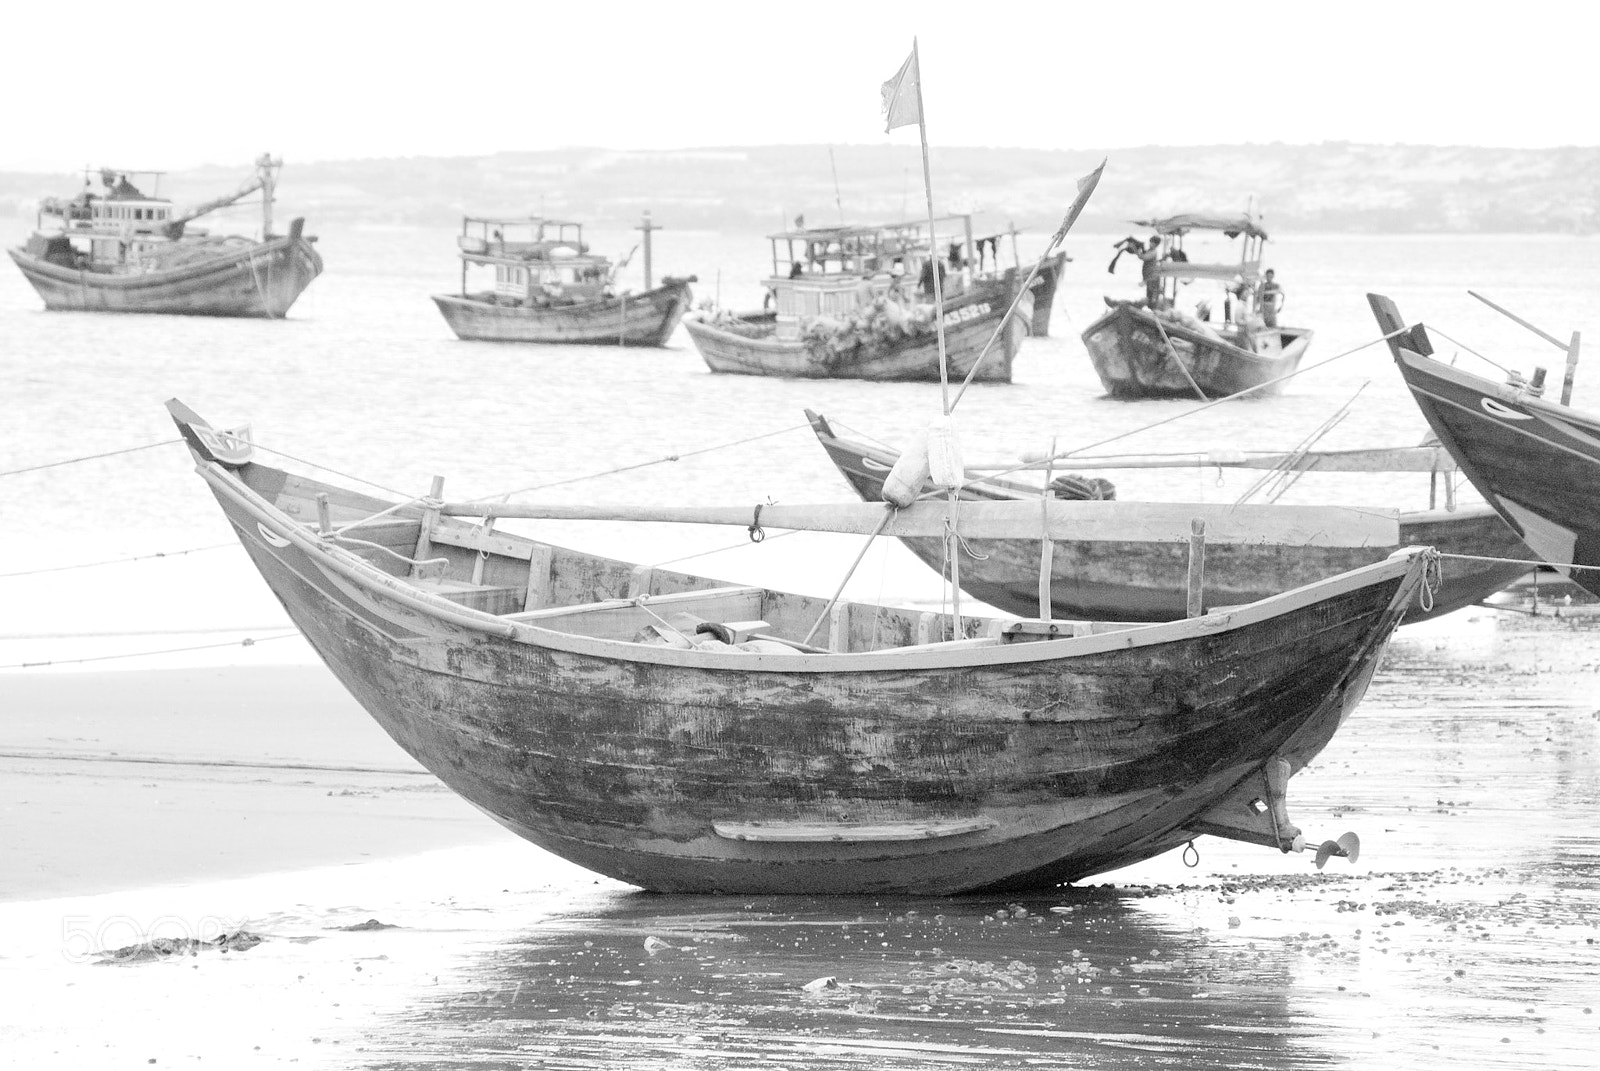 Nikon D200 sample photo. Fishing boats, kep, cambodai photography